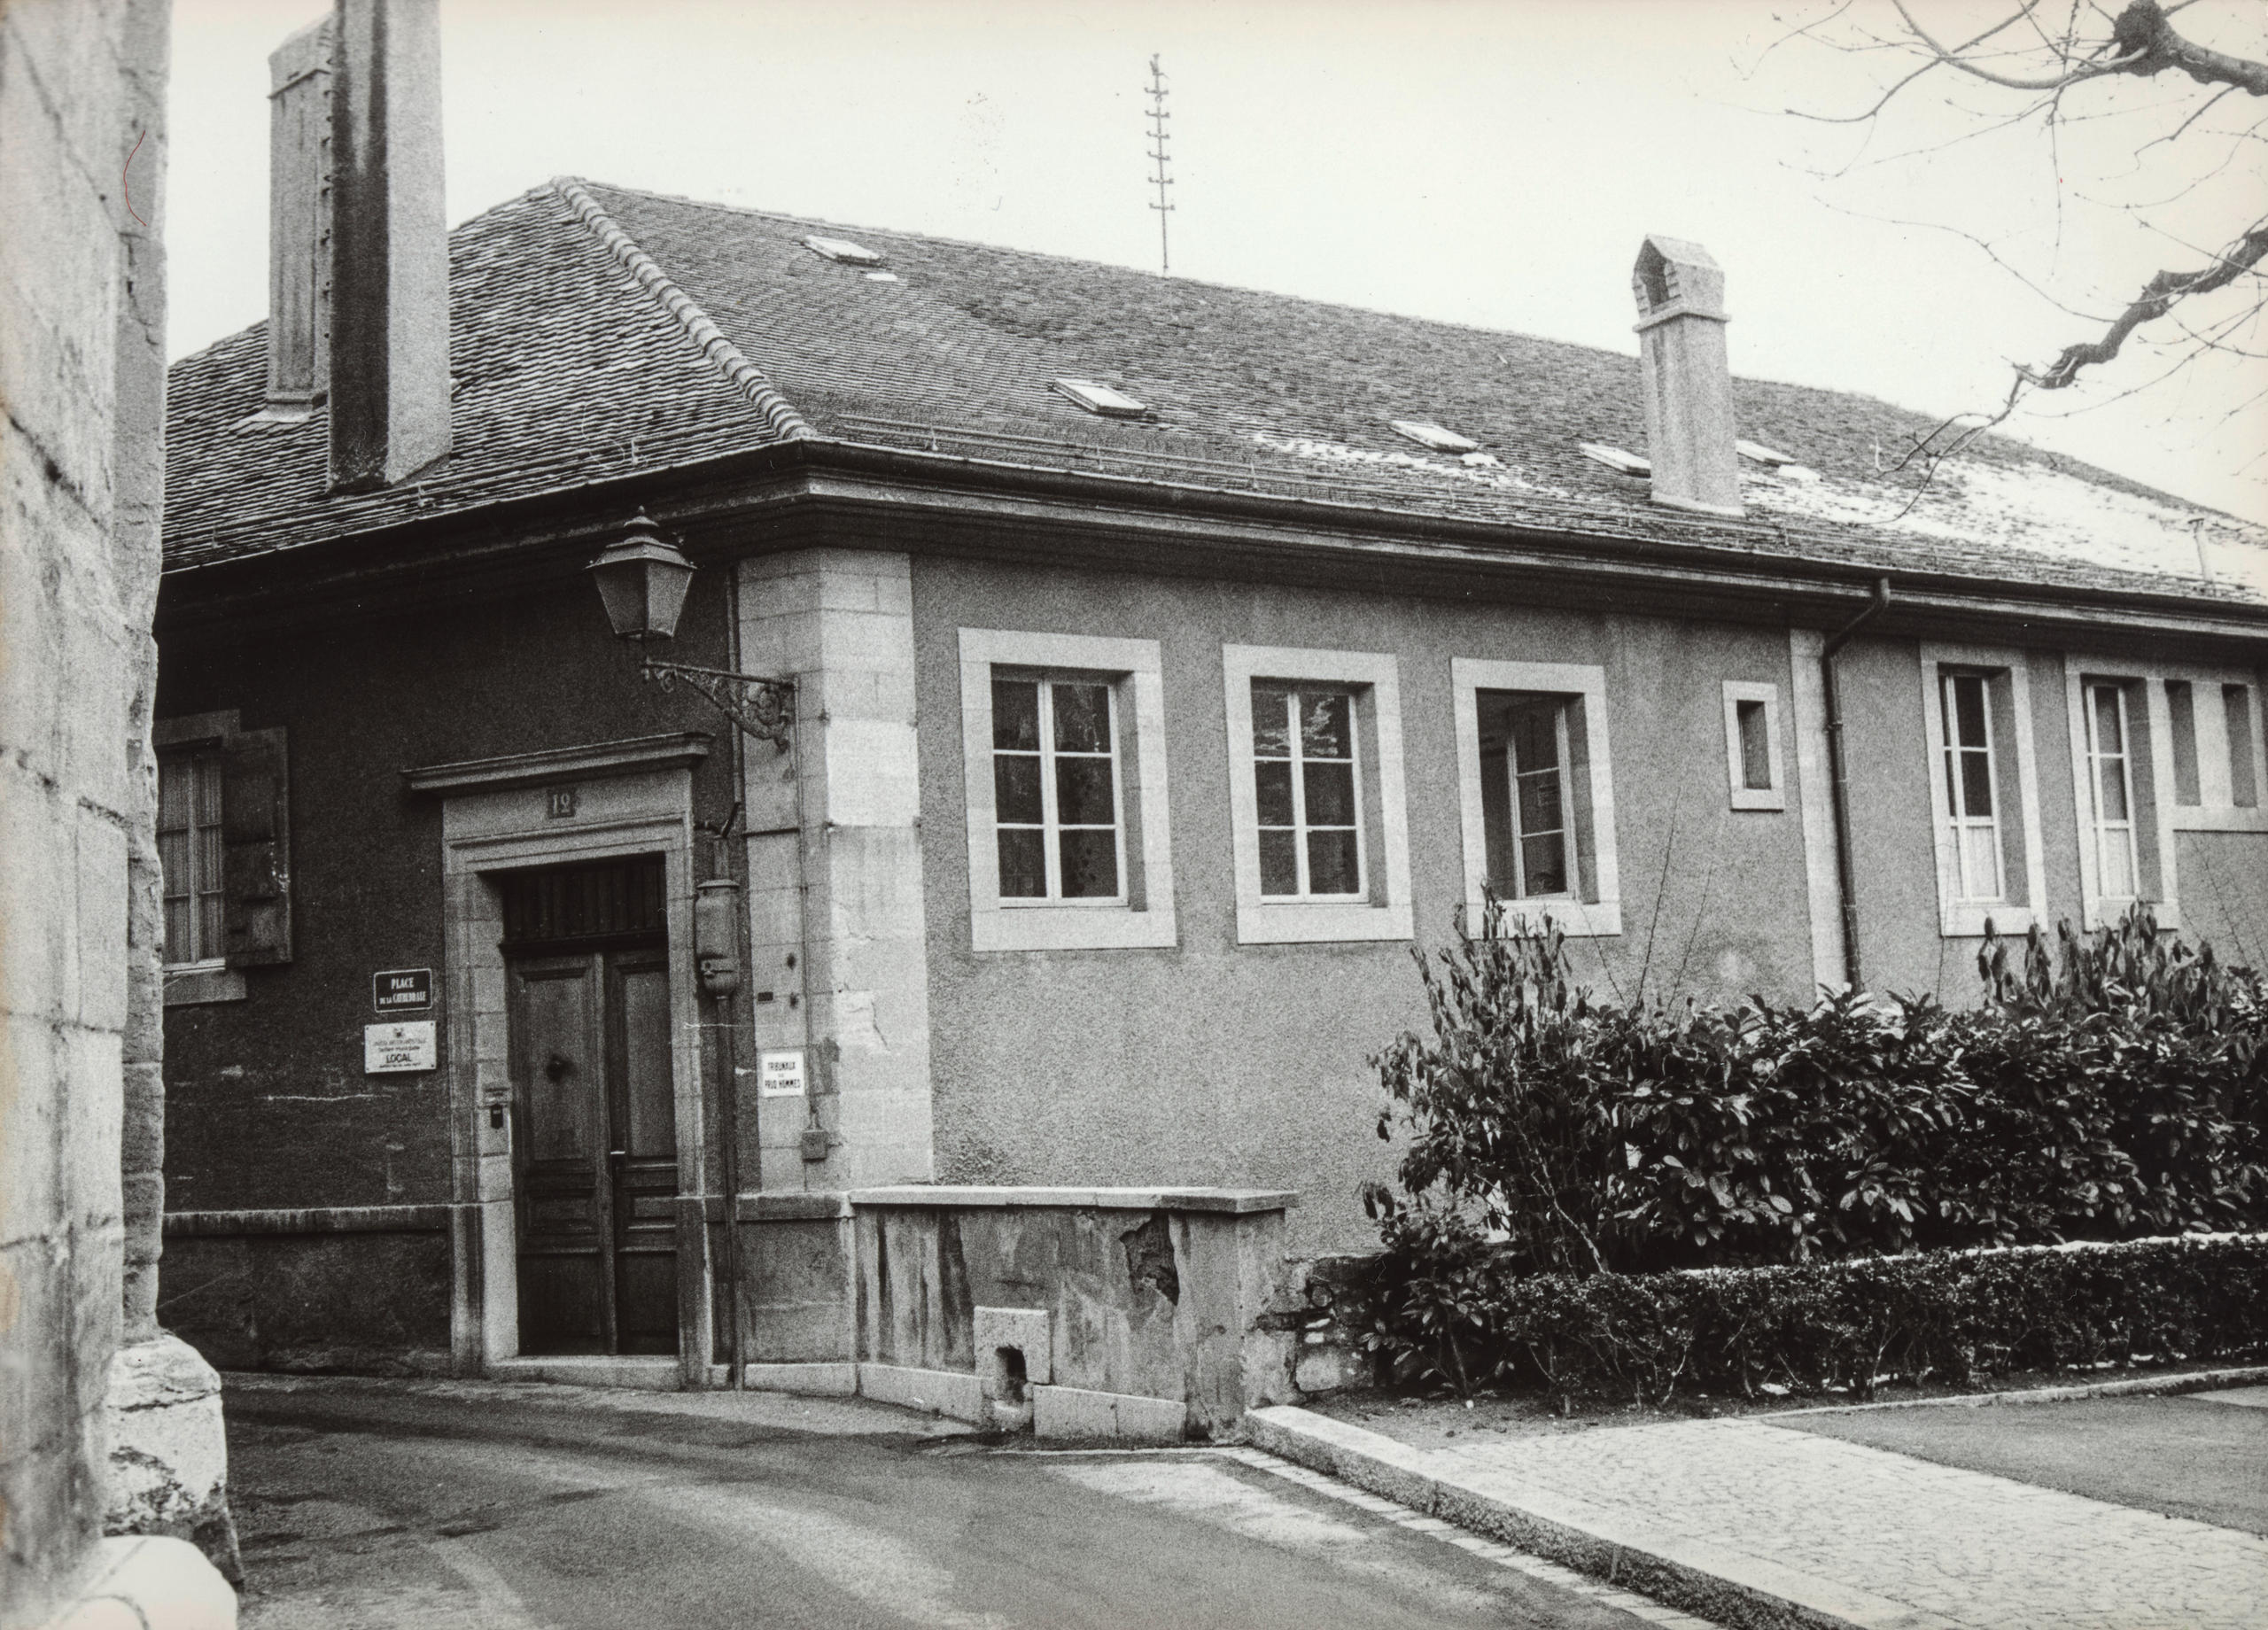 瑞士電影資料館的第一處場地位於大教堂廣場13號，這是一張1951年拍攝的老照片。